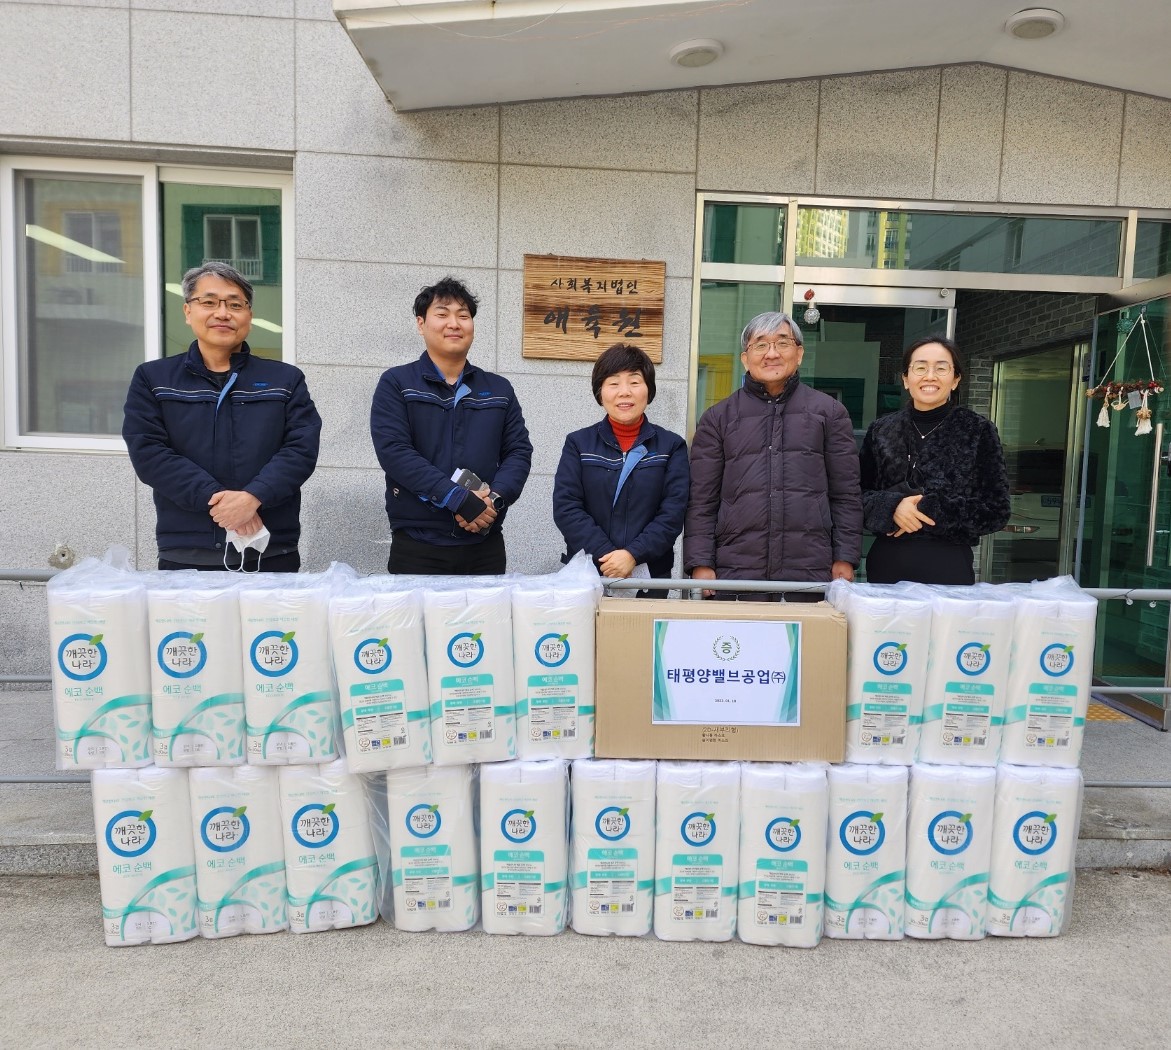 韓国PVIが愛育園にトイレットペーパーなどを寄付